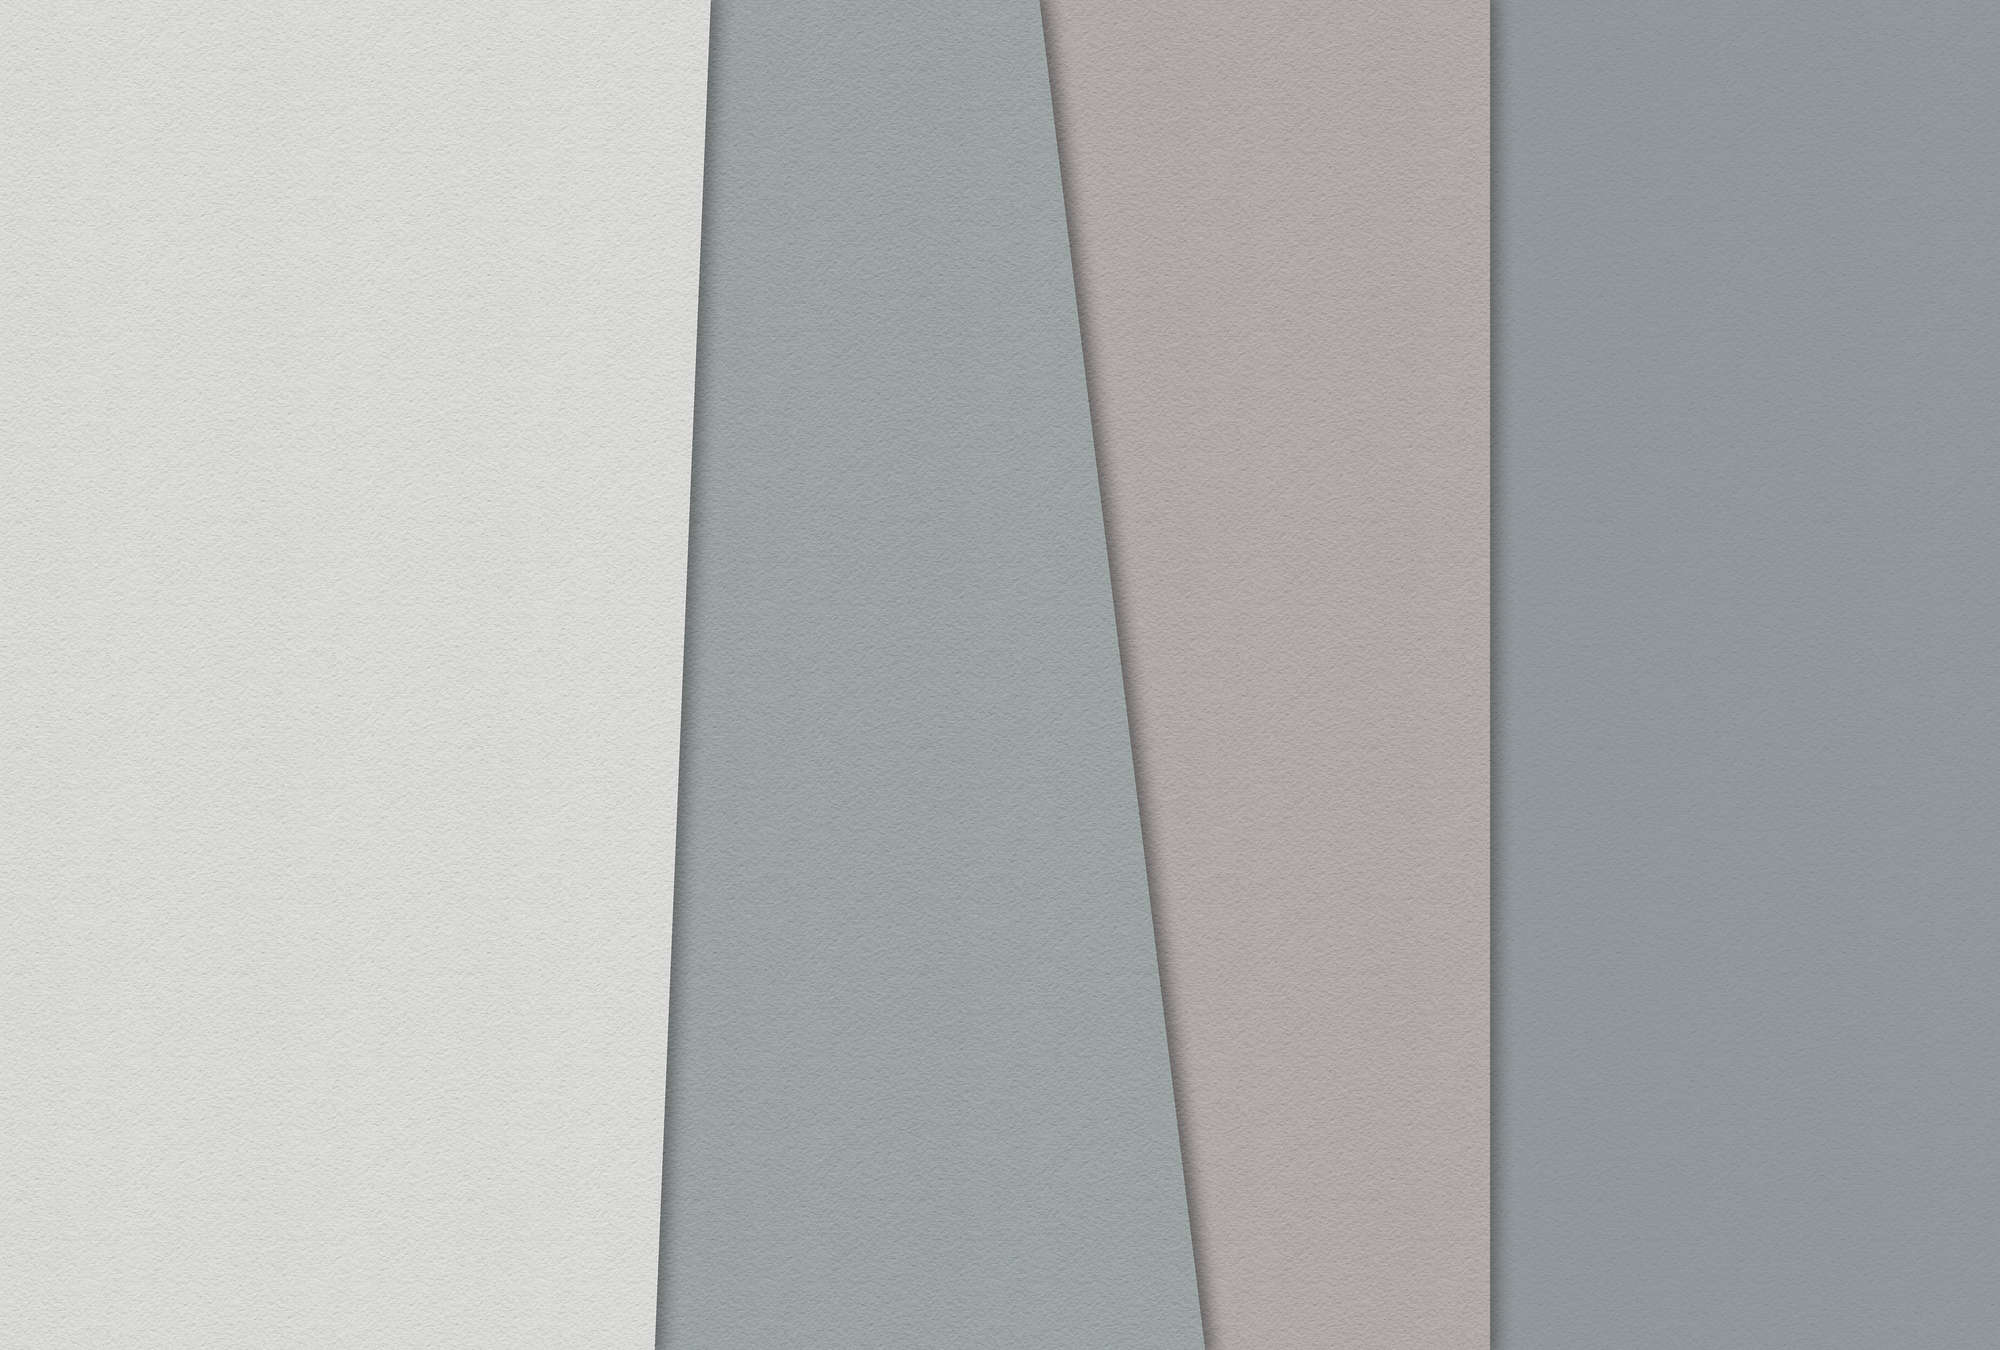             Carta stratificata 1 - Carta da parati grafica con aree colorate in una struttura di carta fatta a mano - Vello liscio blu, crema | perla
        